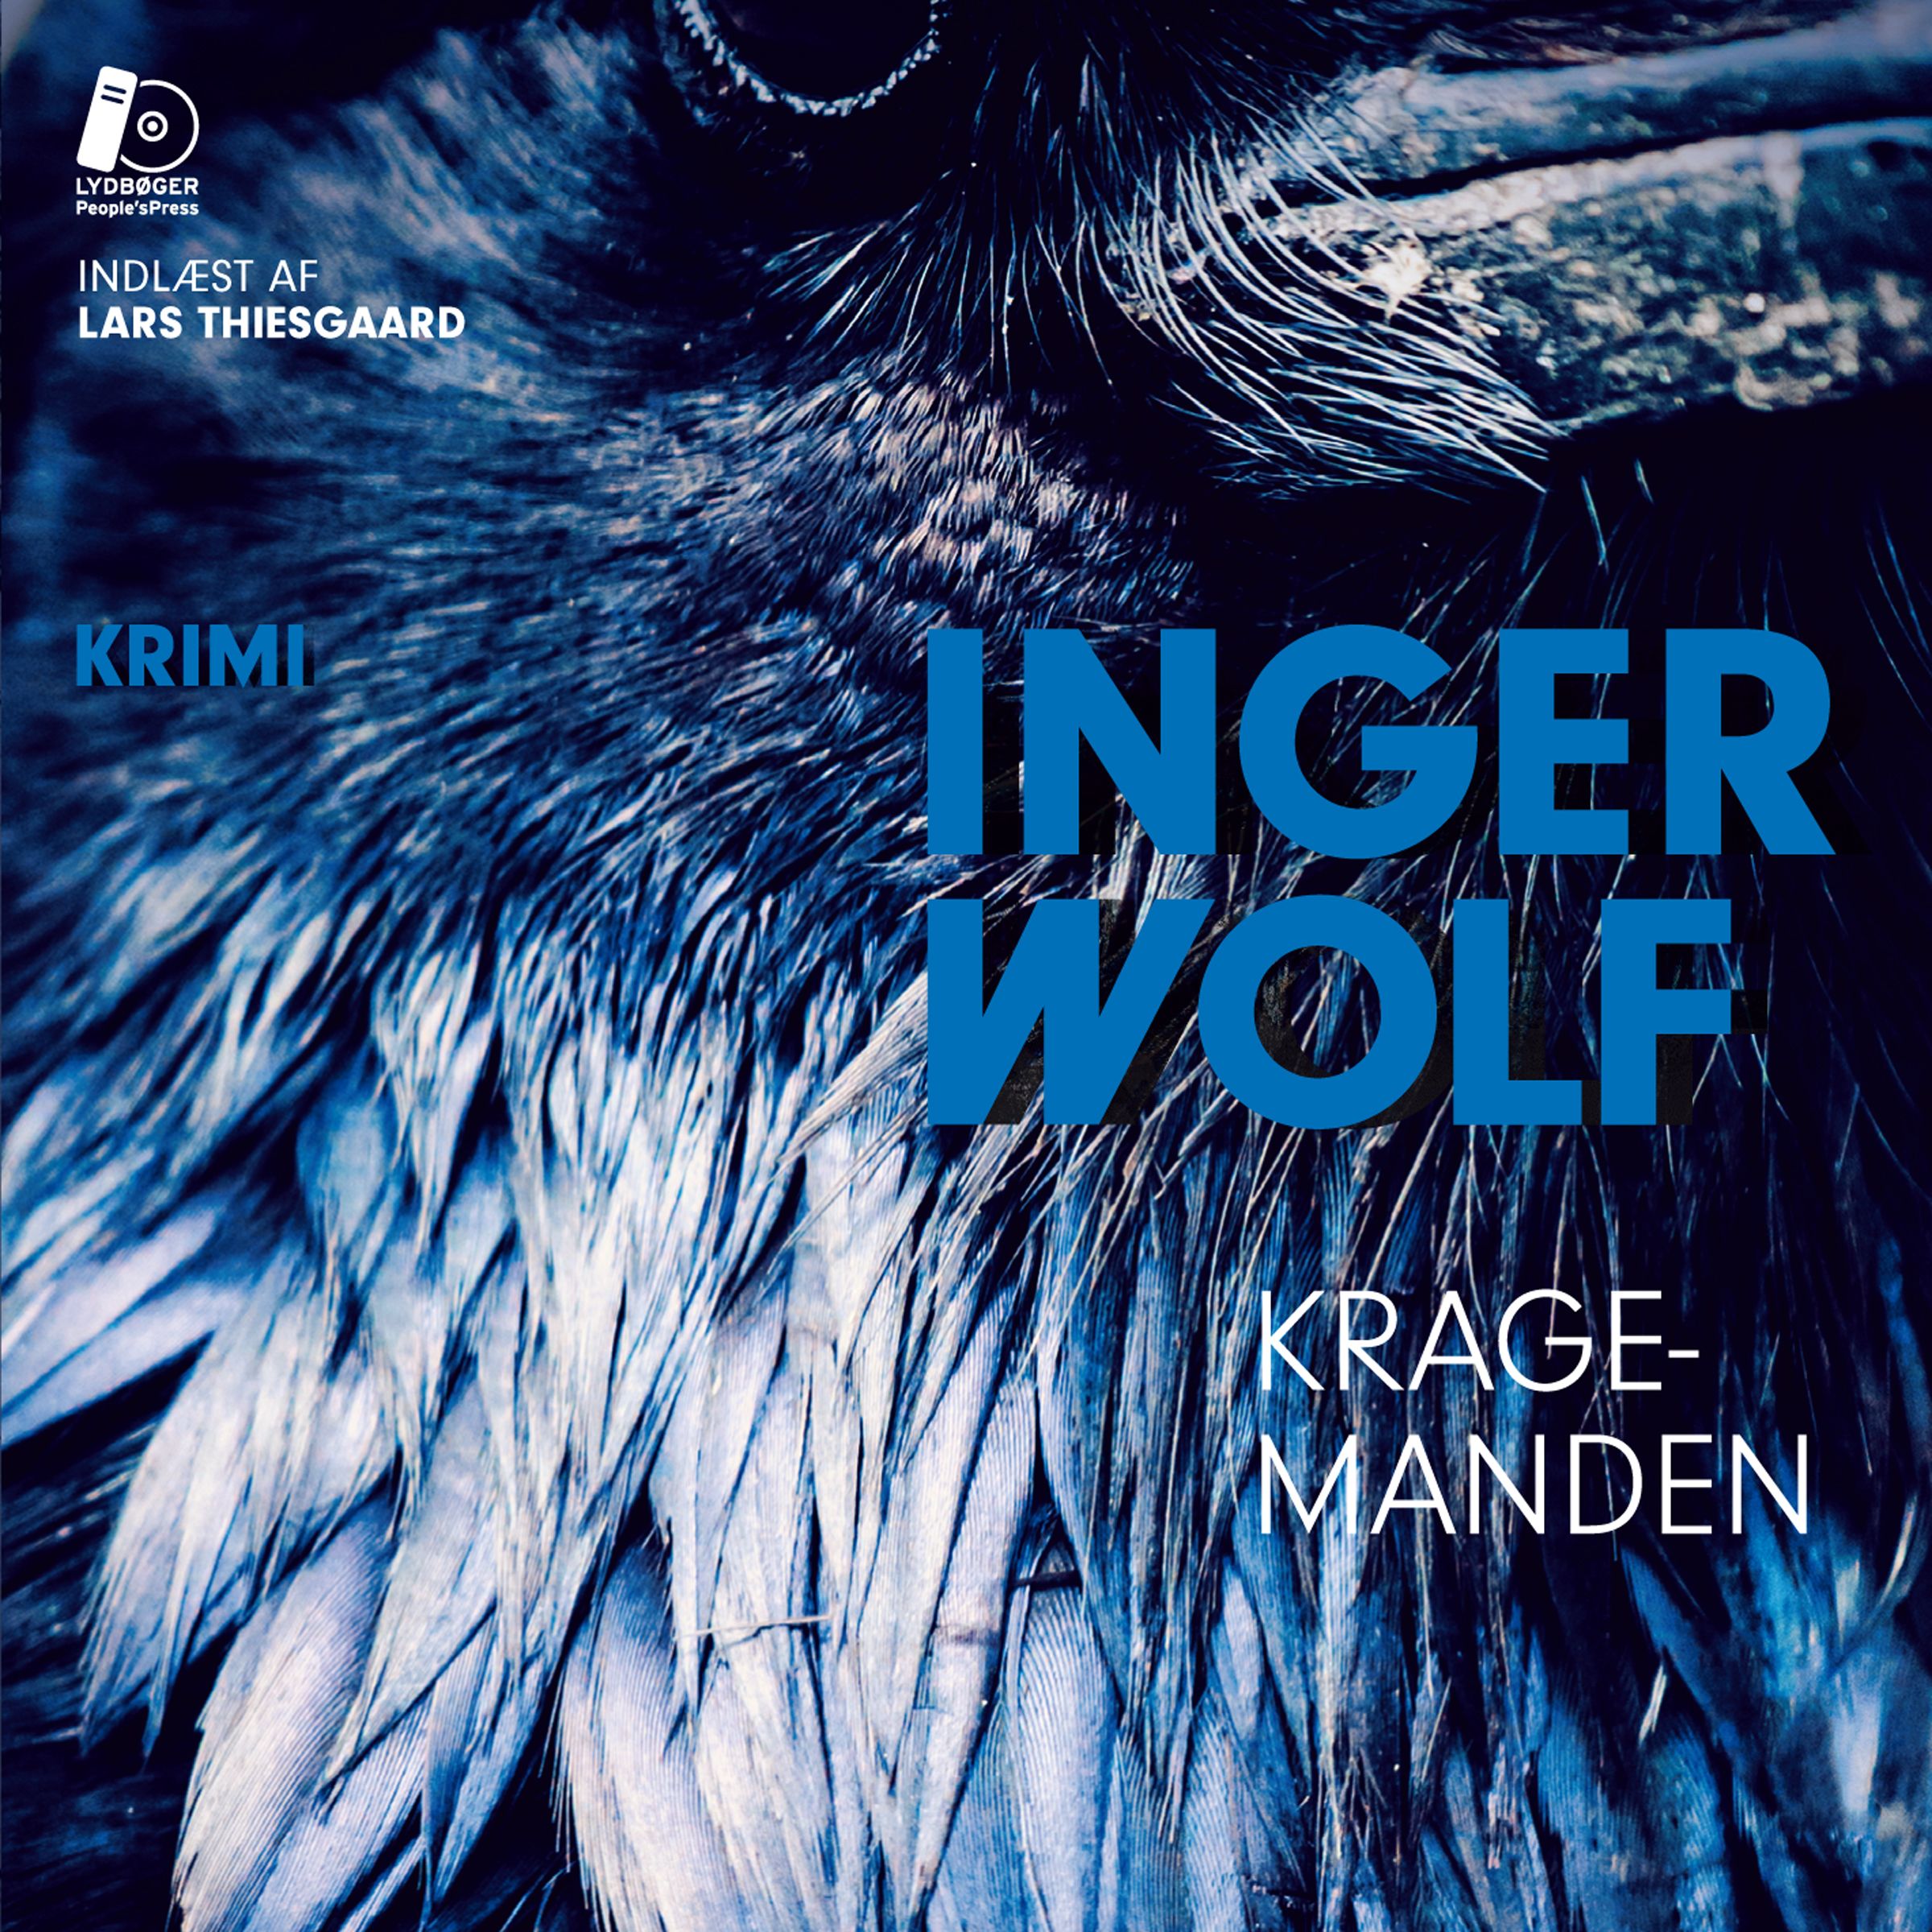 Kragemanden, ljudbok av Inger Wolf